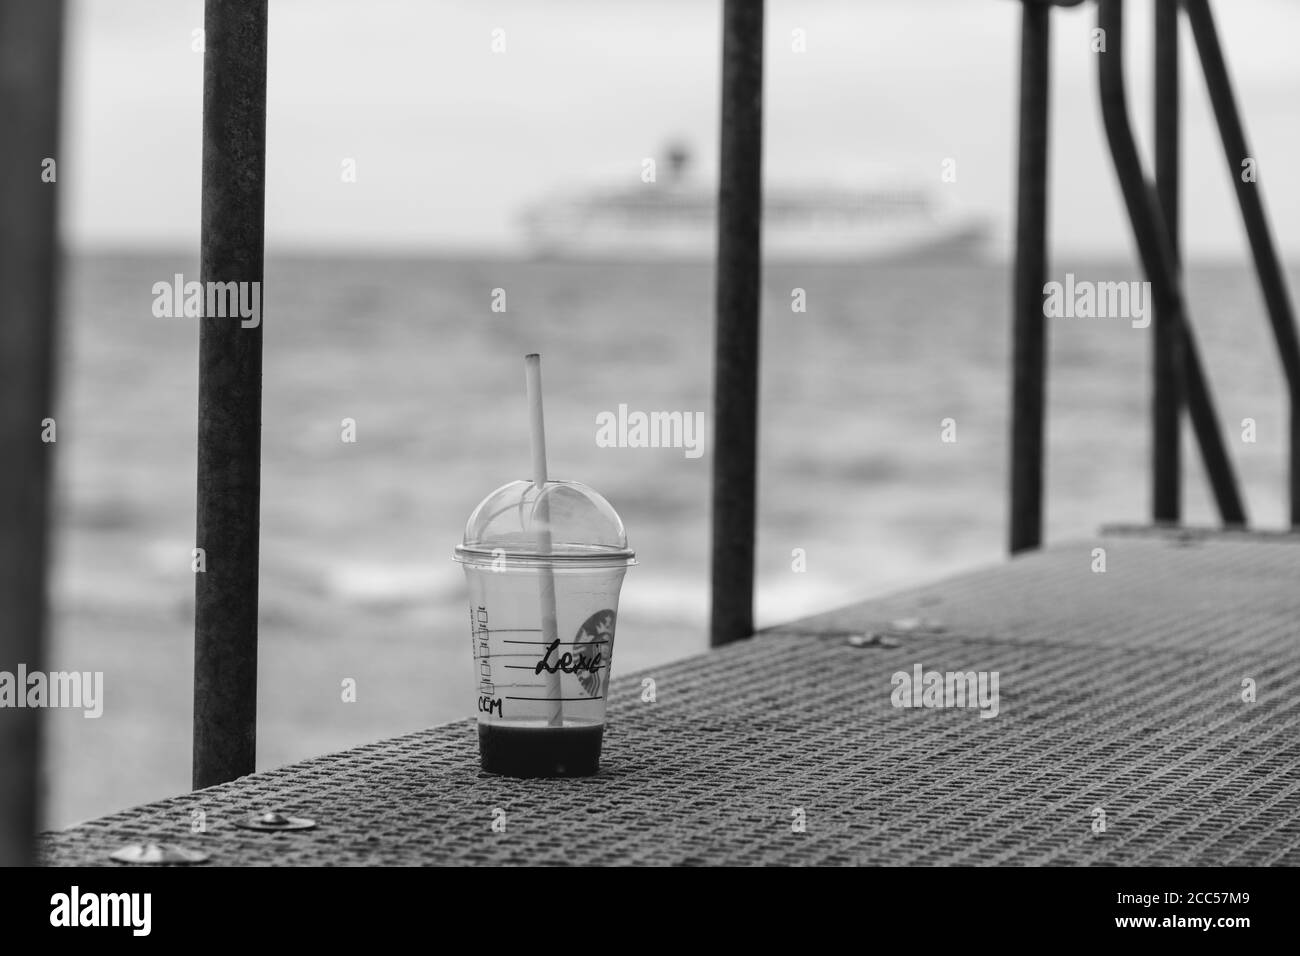 Pollution plastique : tasse Starbucks laissée par les touristes à la plage. Bateau de croisière P&O en arrière-plan. Bournemouth, Royaume-Uni. Banque D'Images